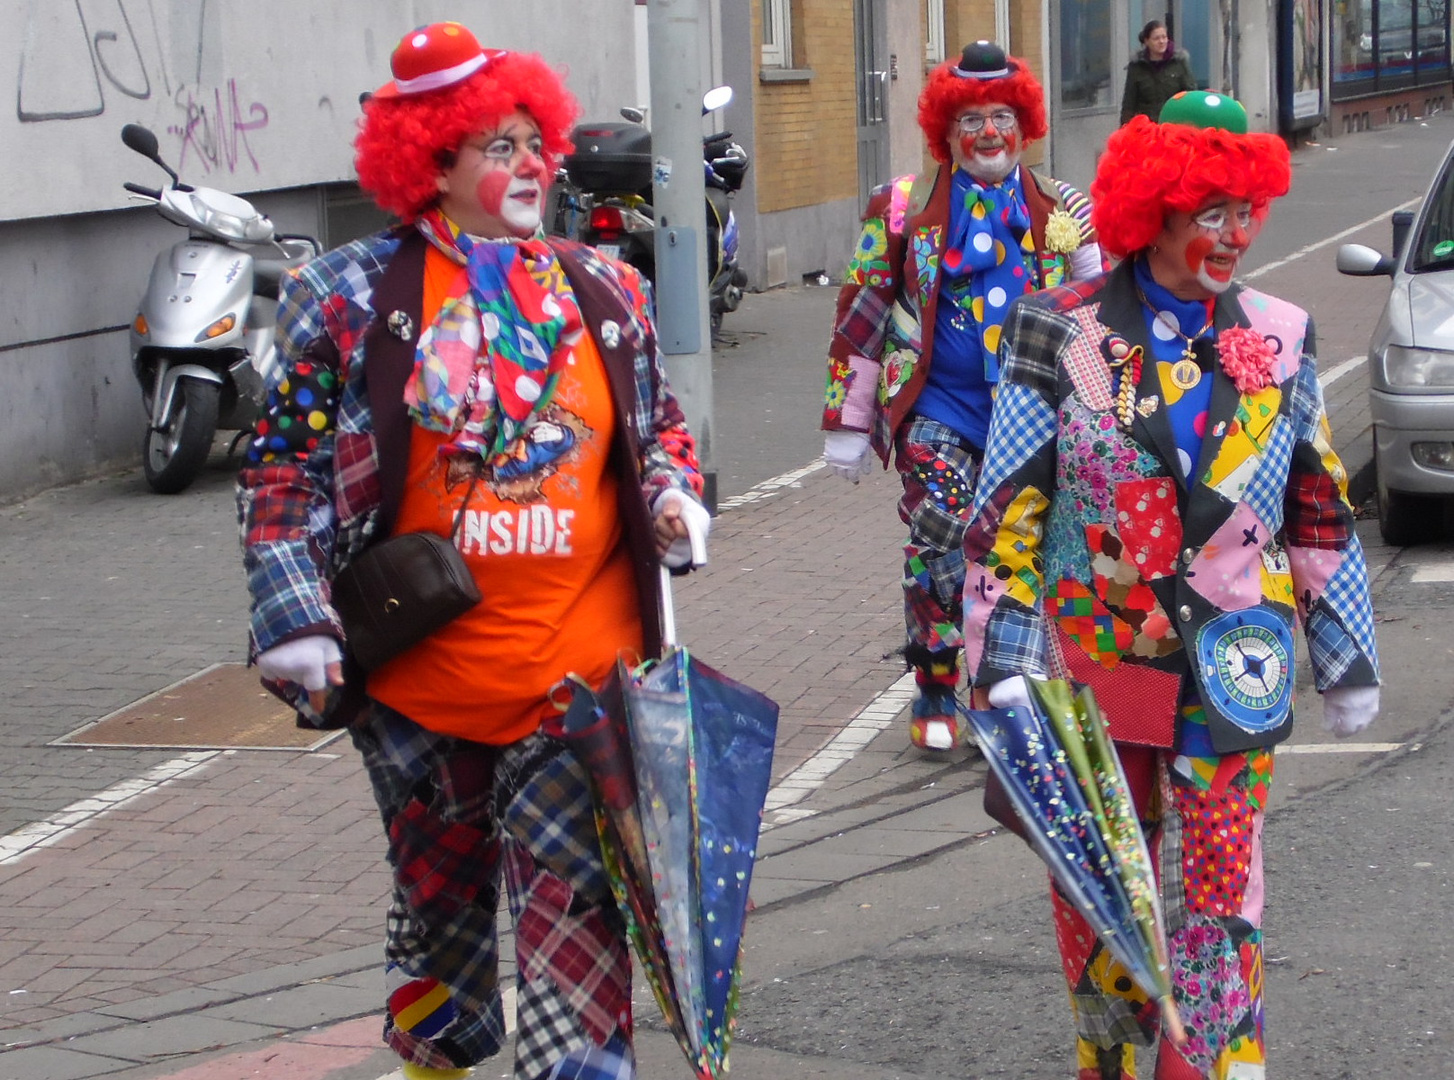 Fassenacht 2013 - Clowns